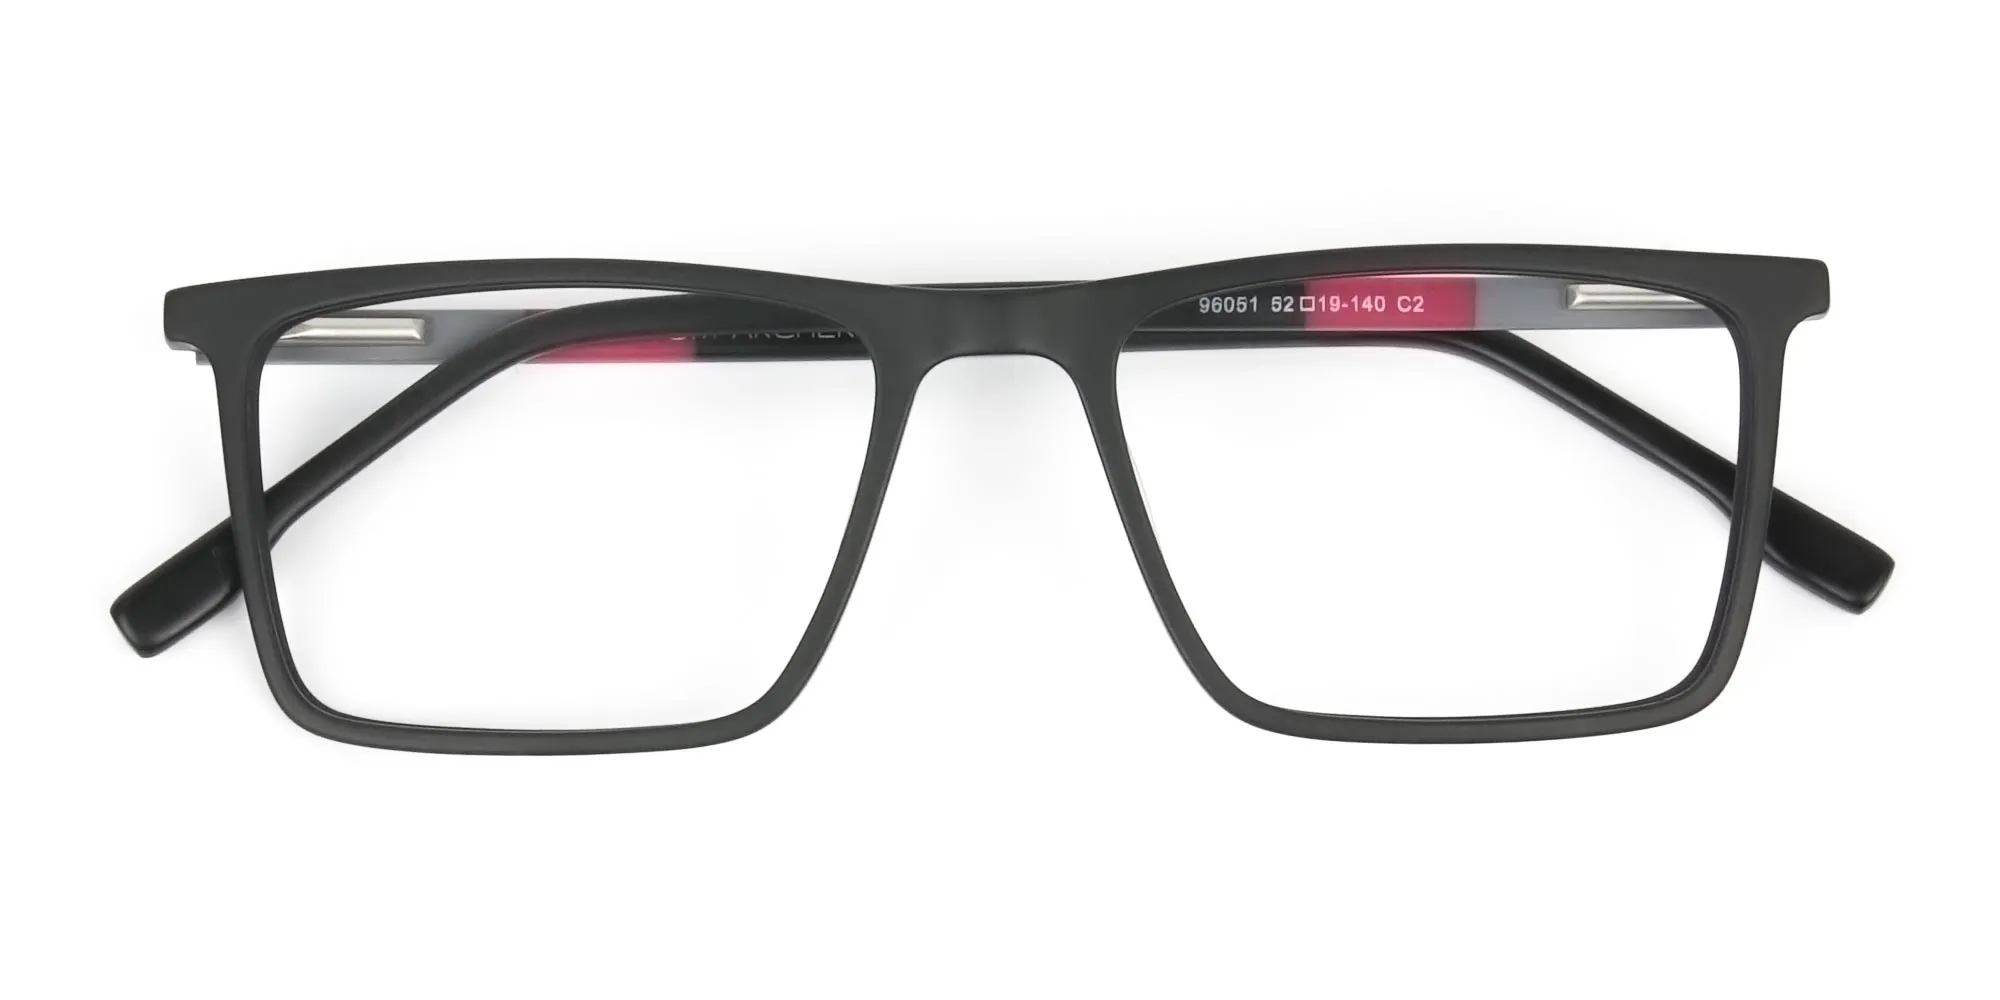 Matte Black & Red Rectangular Glasses - 2